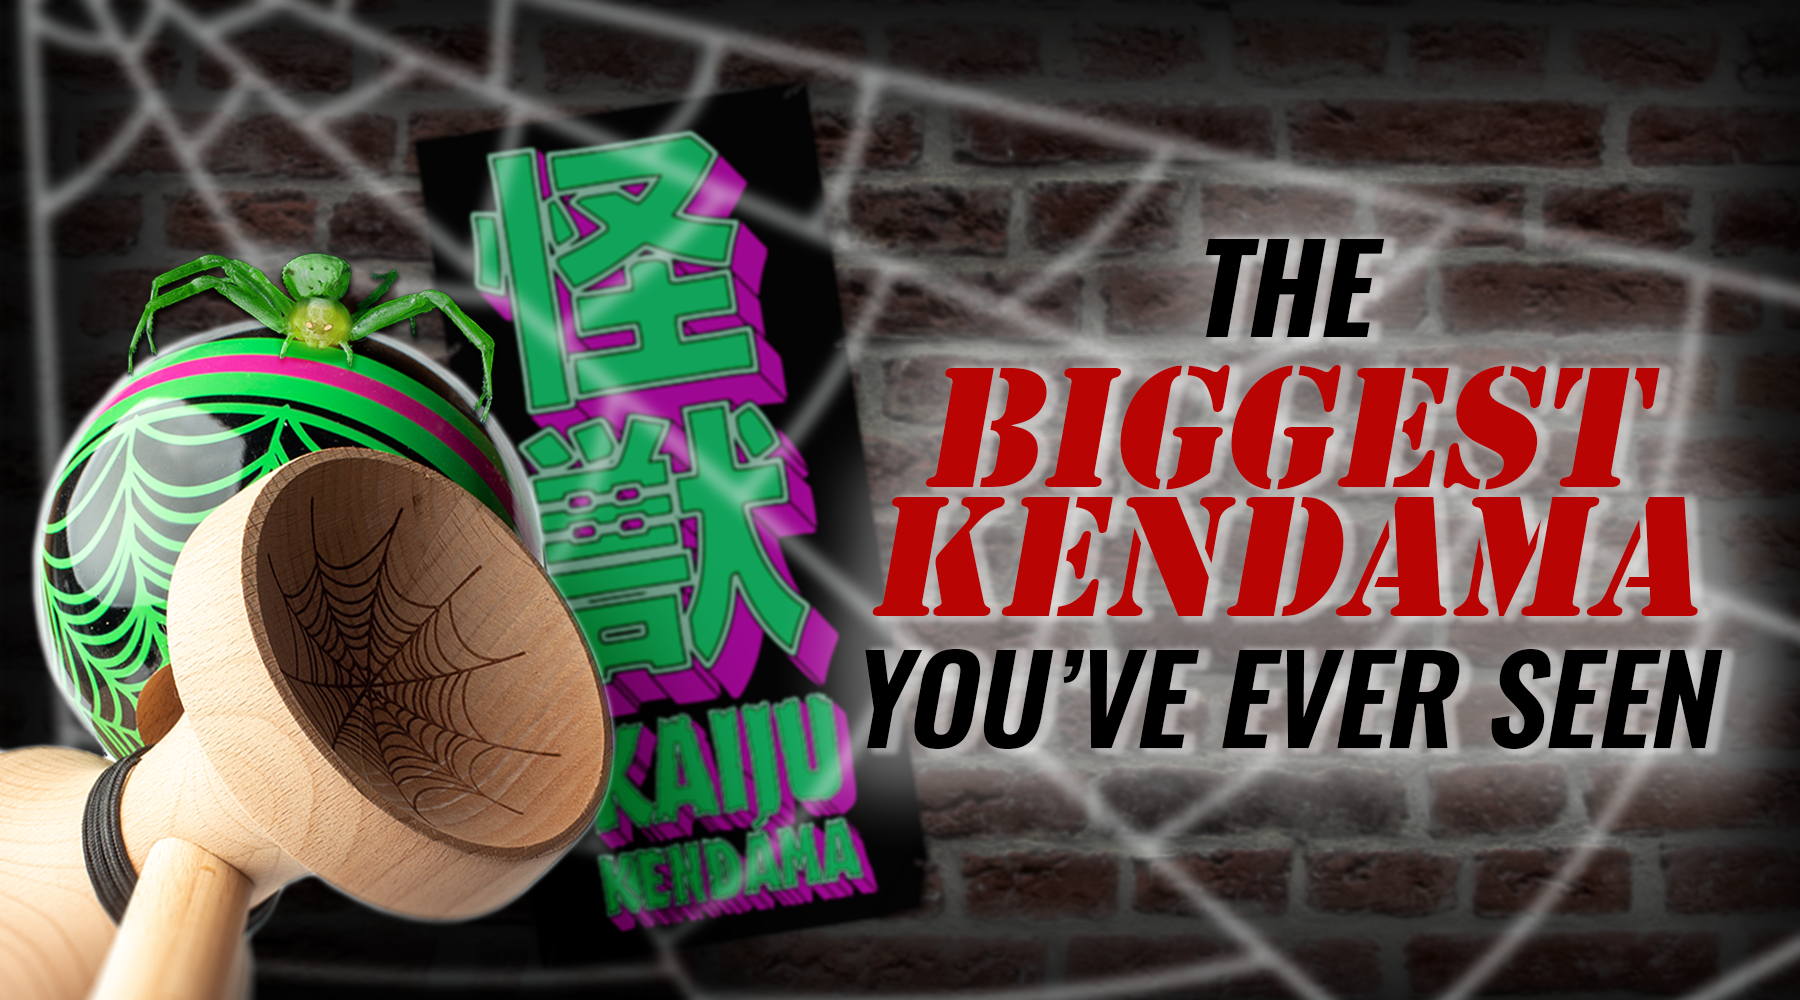 The Biggest Kendama You've Ever Seen - Kaiju Kendama - Feature Image - Sweets Kendamas - Blog